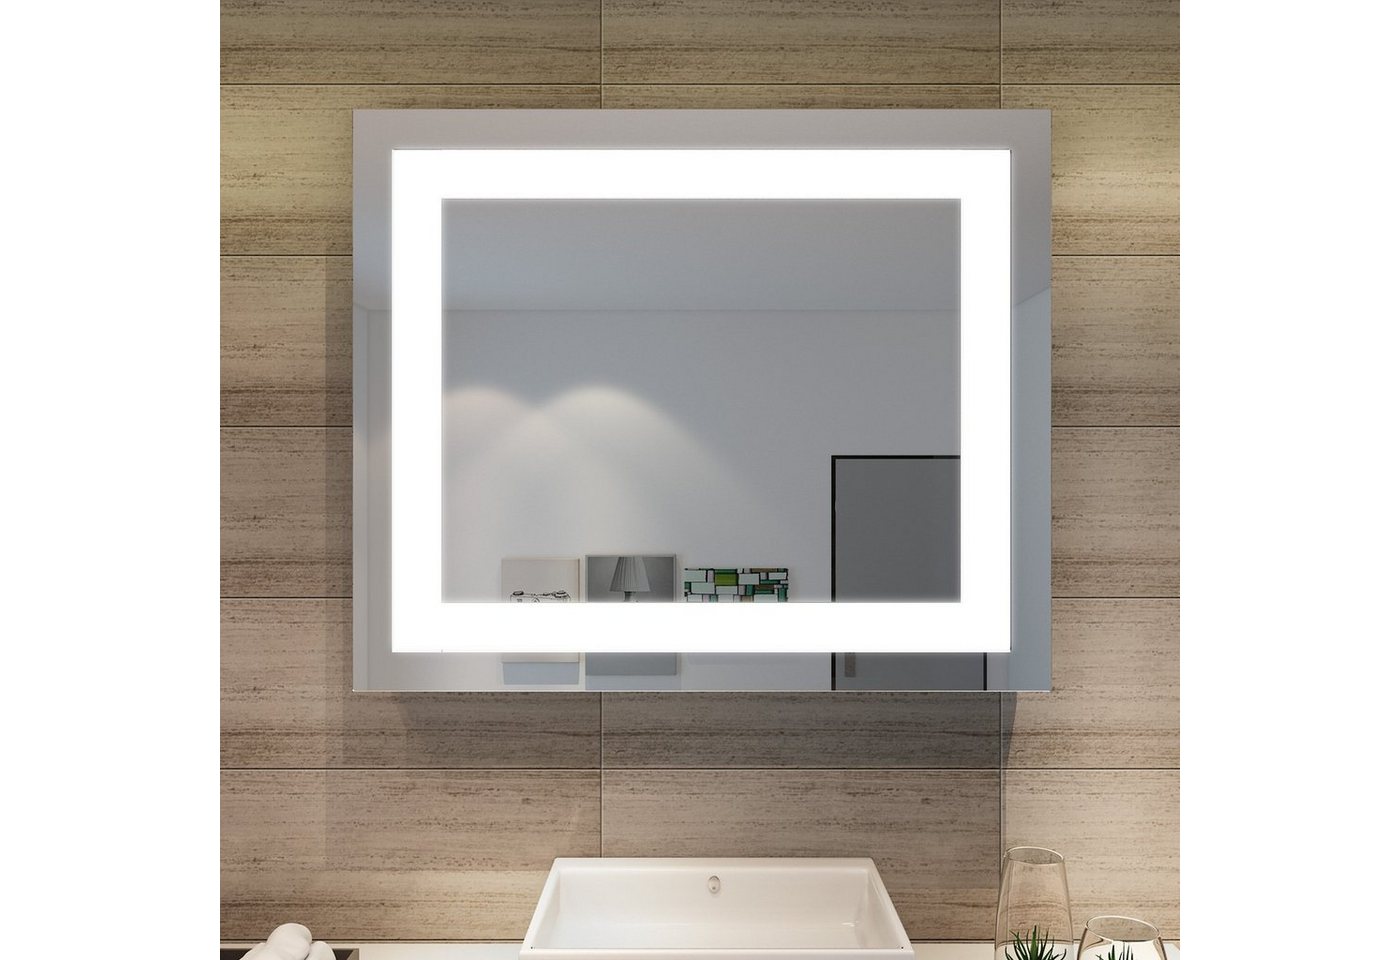 SONNI Schminkspiegel Badspiegel mit LED Beleuchtung 60 cm Wandspiegel kaltweiß IP44, energiesparend, Lichtspiegel, Badezimmerspiegel, Schminkspiegel von SONNI